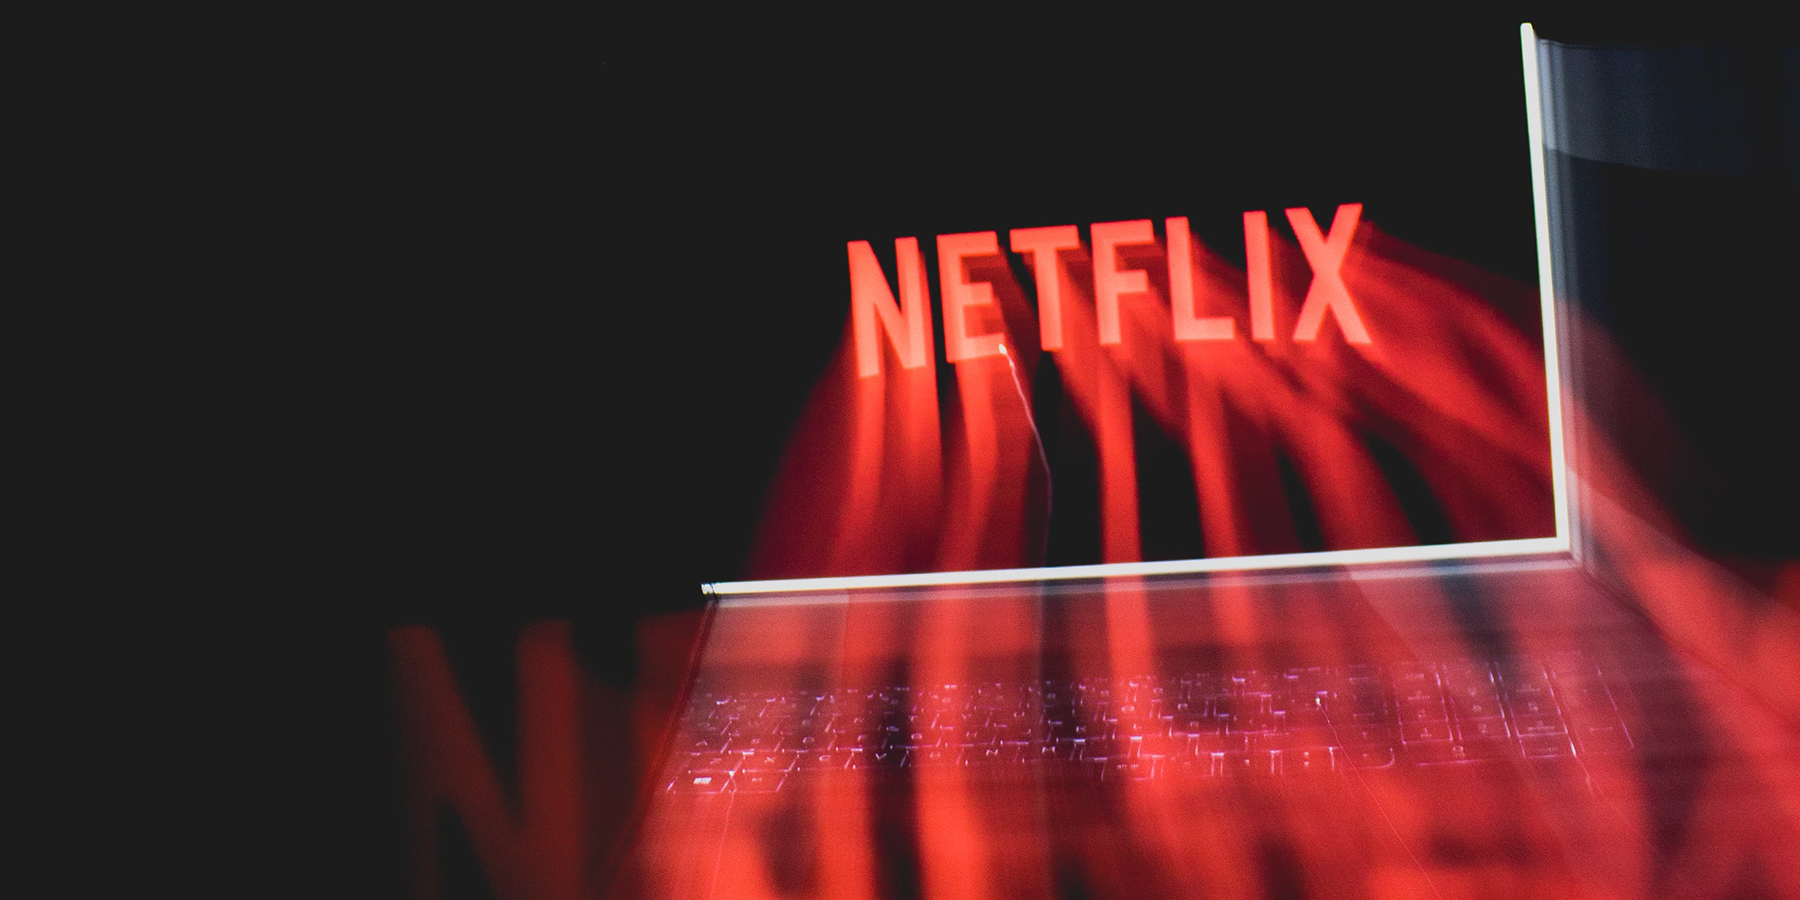 Netflix SWOT Analysis: A Brief Report